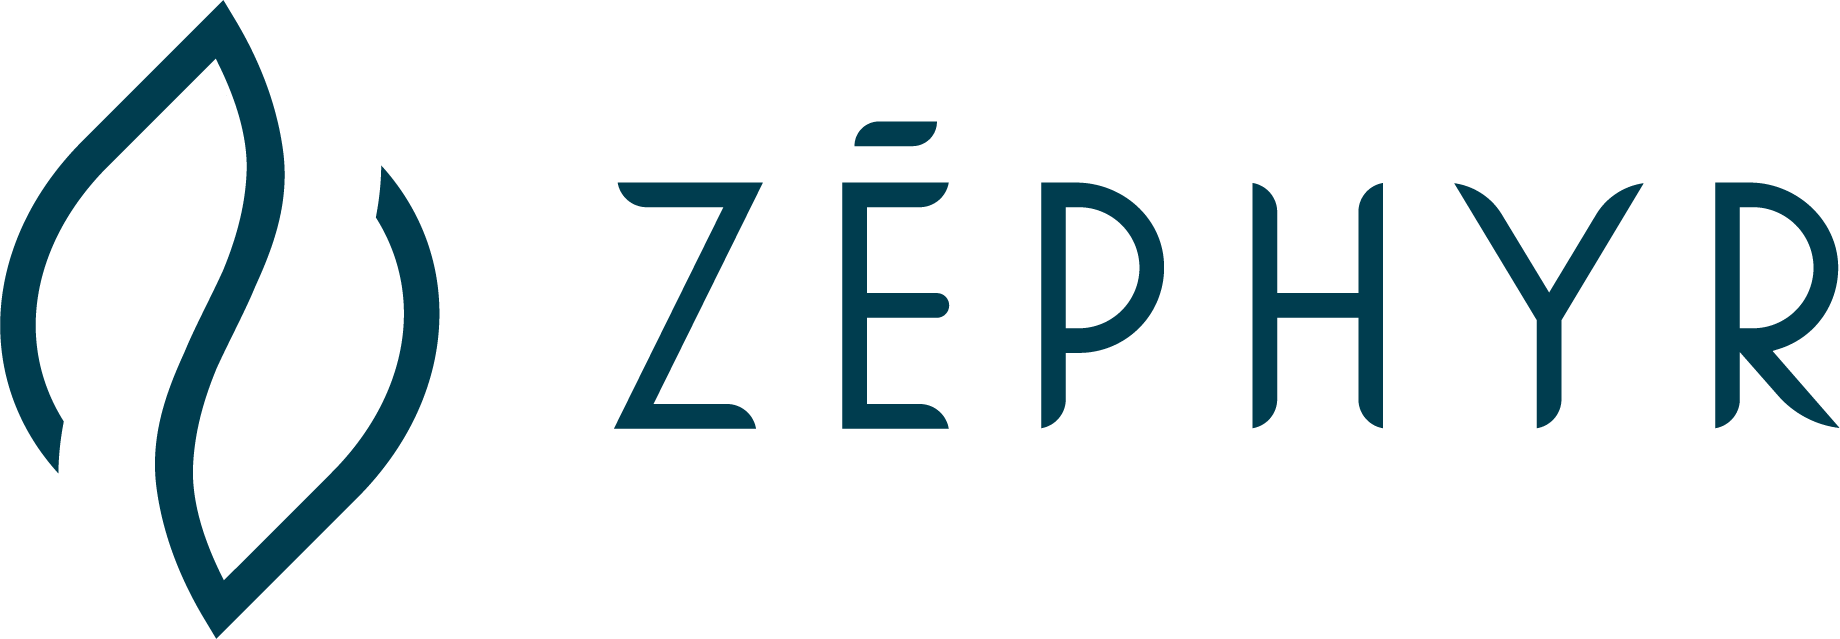 logo de zéphyr decoration en bleu foncé